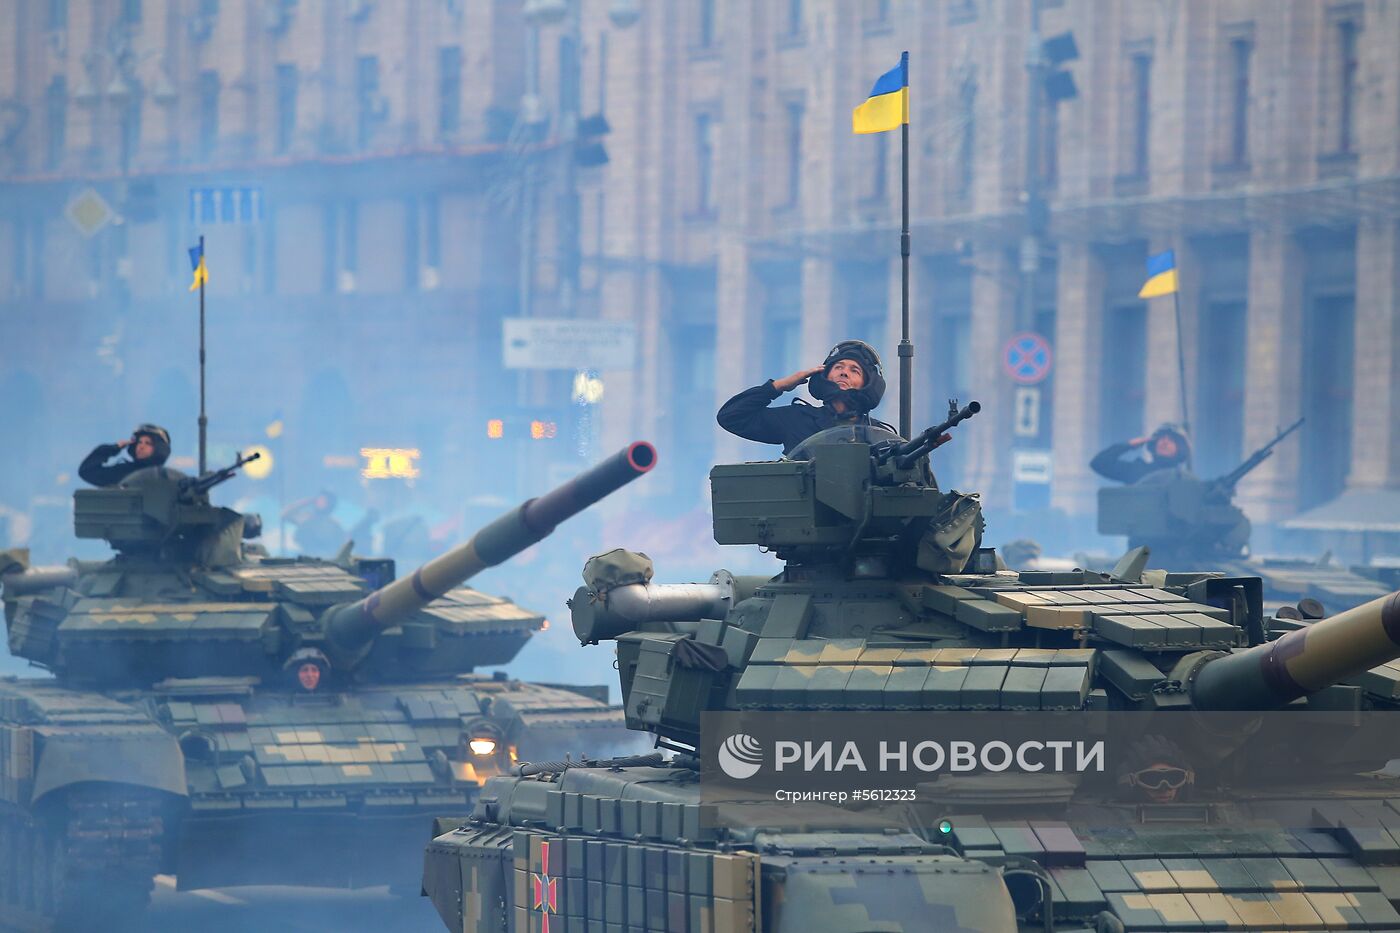 Репетиция парада ко Дню независимости Украины в Киеве